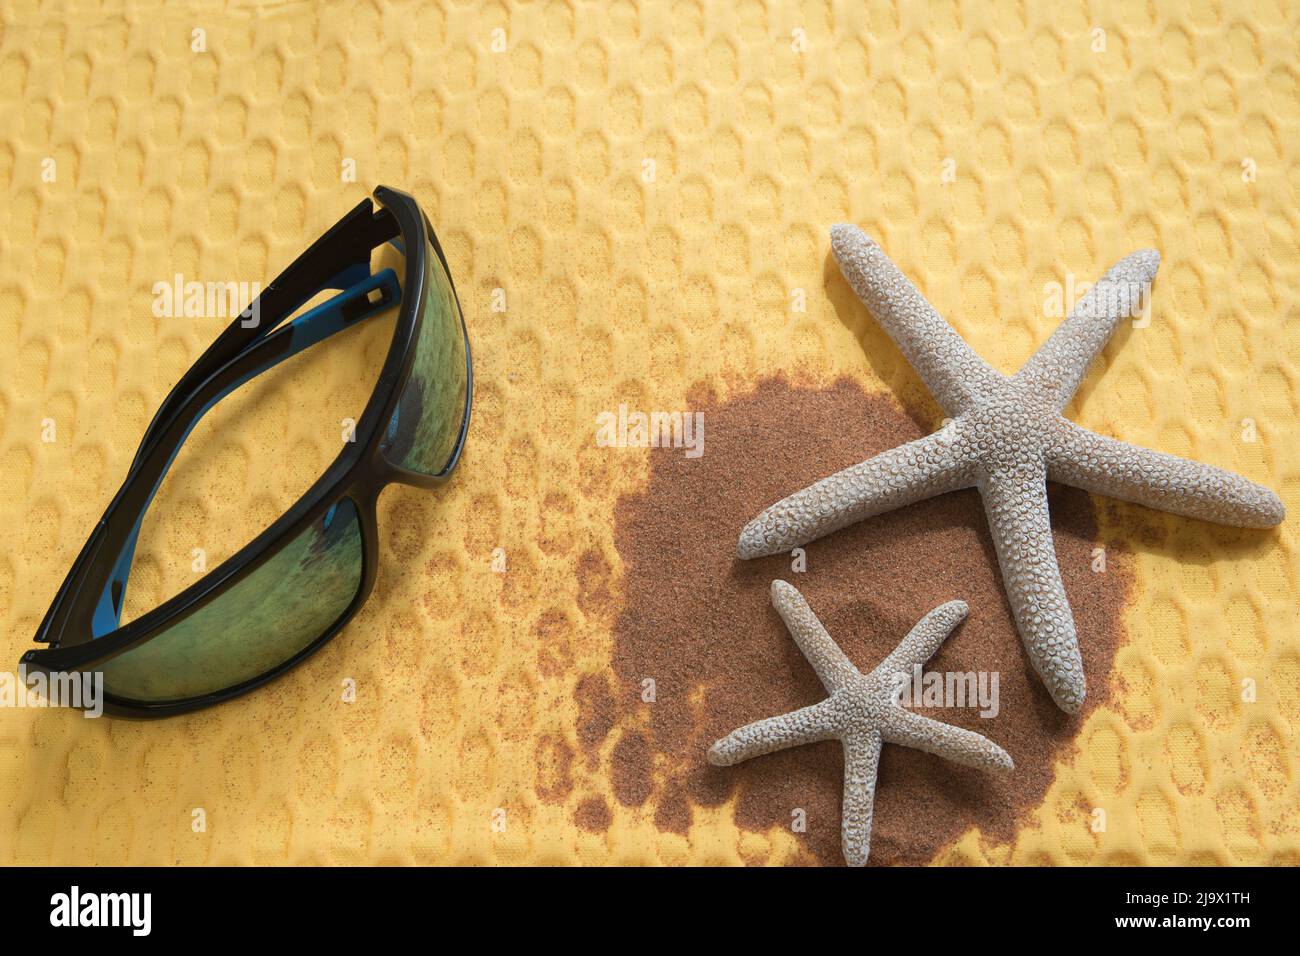 Concetto estivo, piatto con occhiali da sole, stelle marine e sabbia da spiaggia su un vibrante sfondo giallo Foto Stock